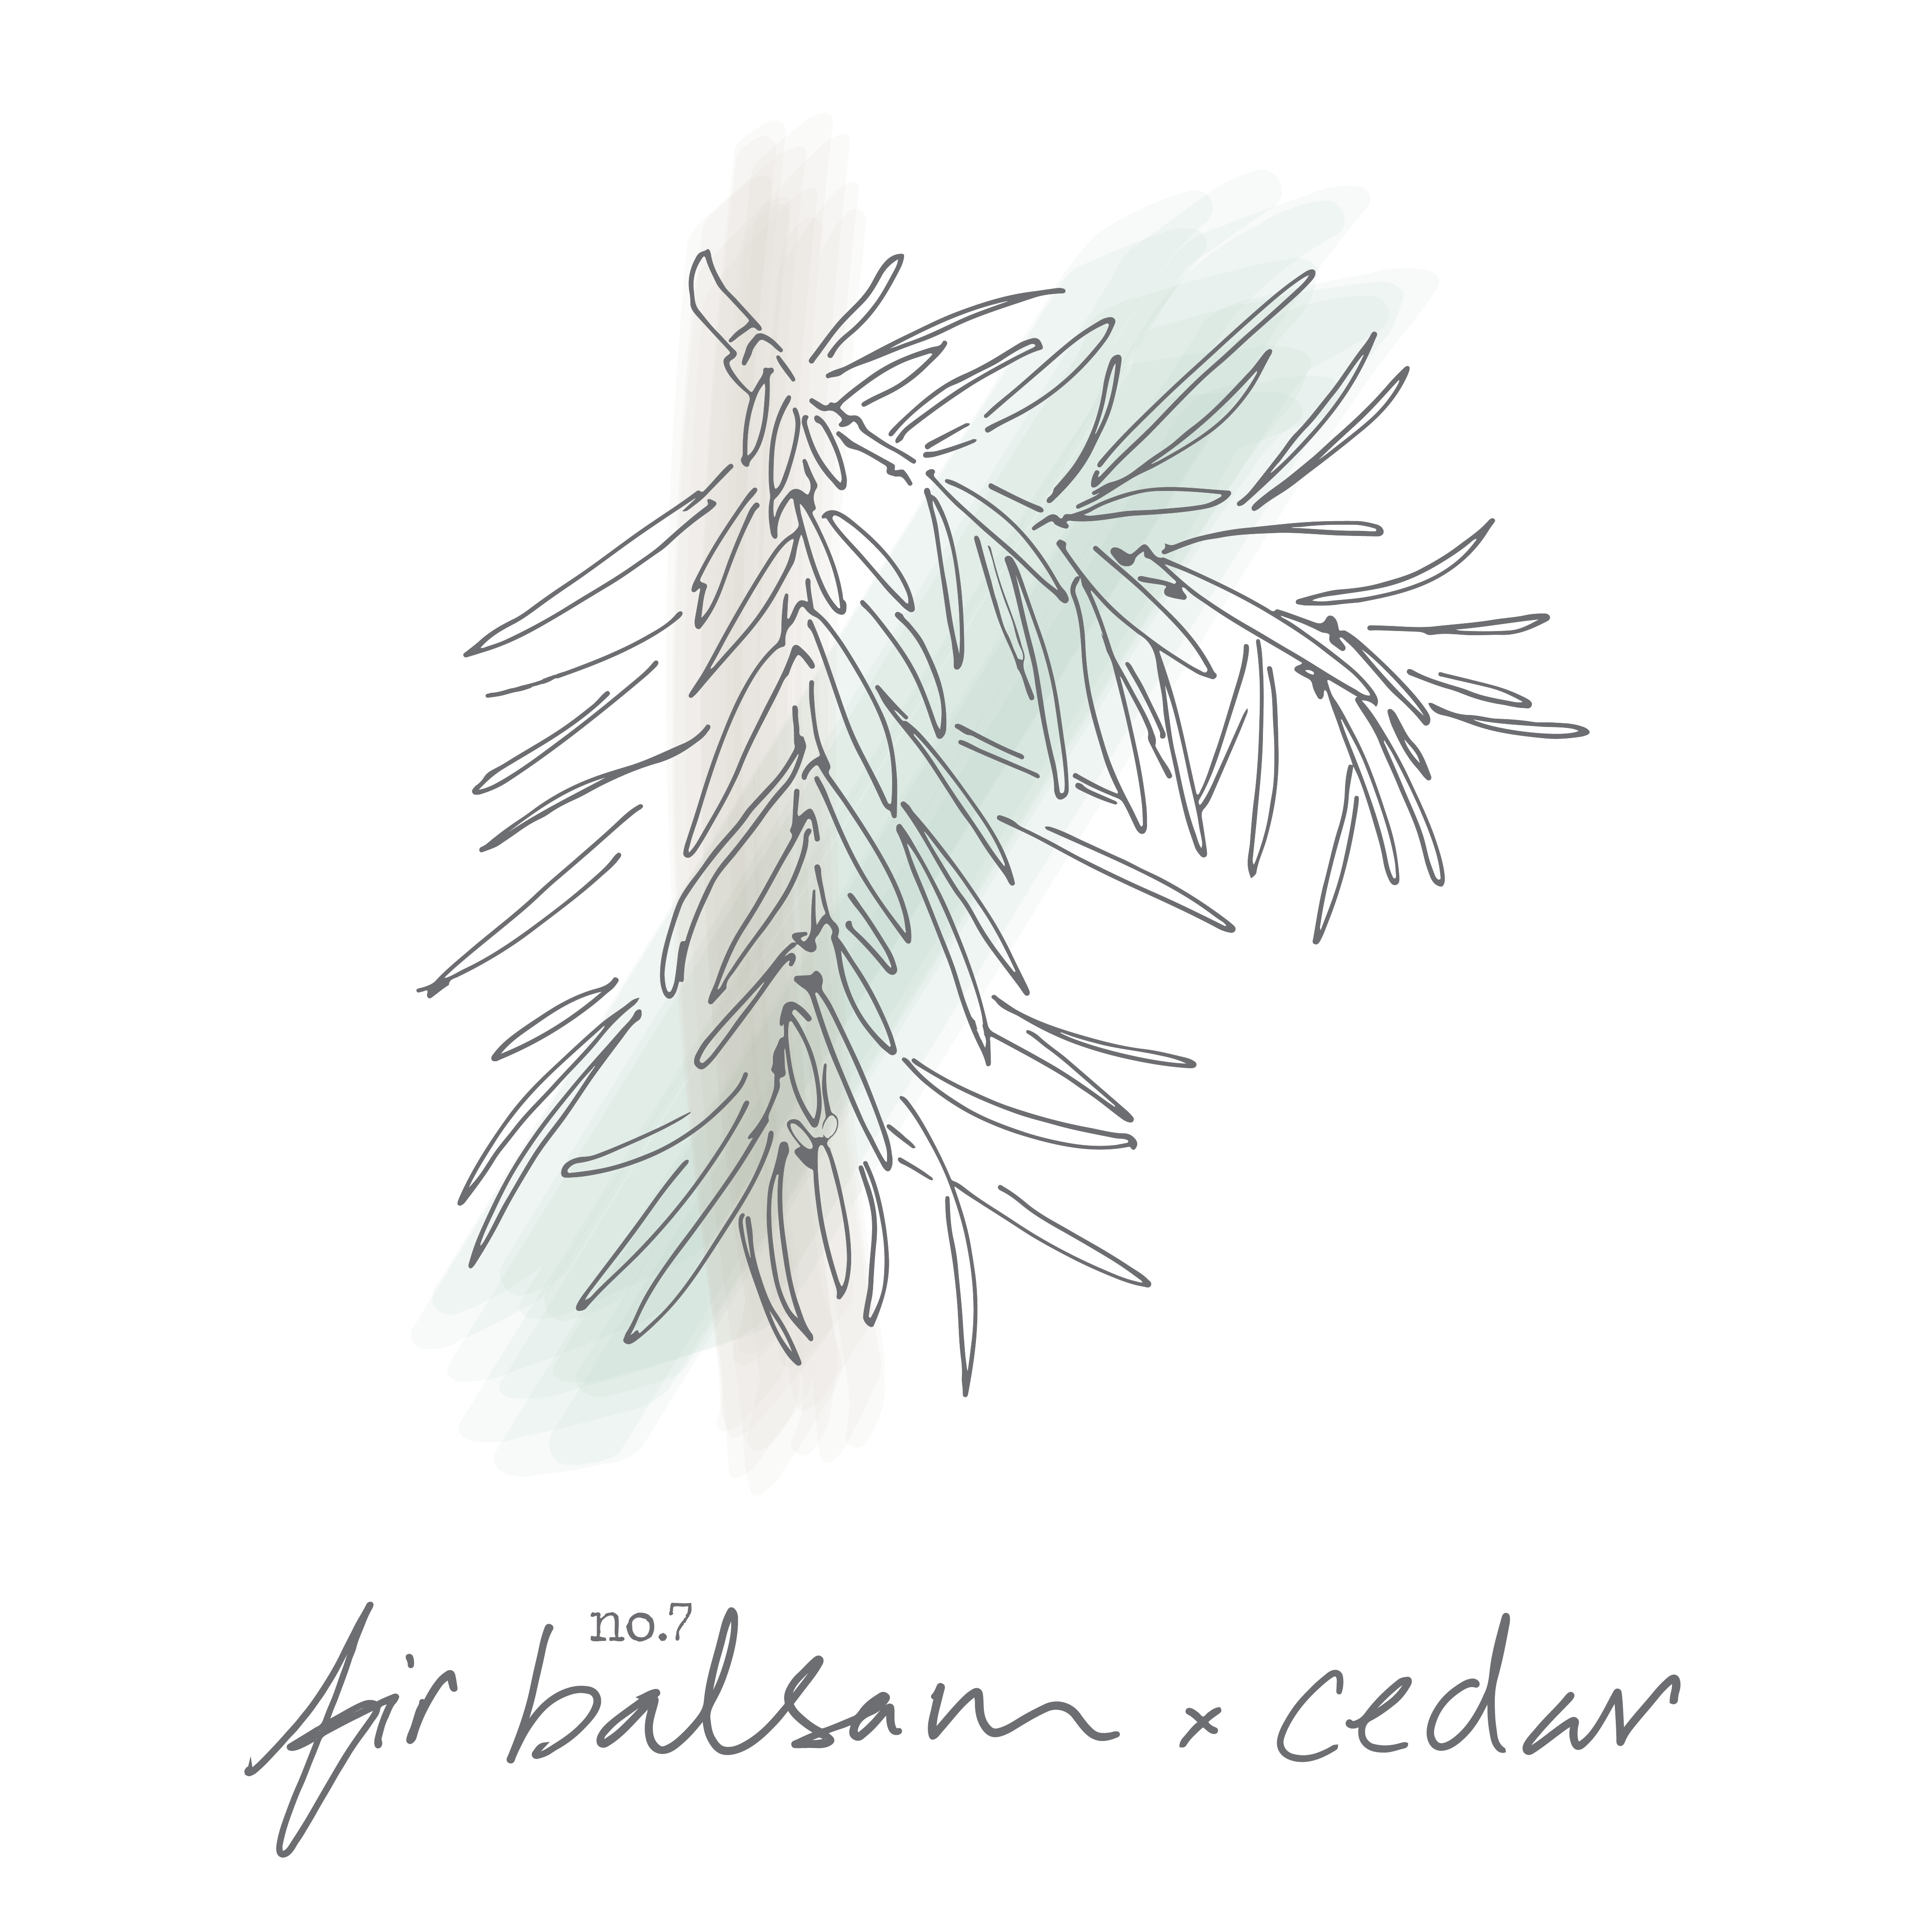 Fir Balsam x Cedar Coconut Wax Candle